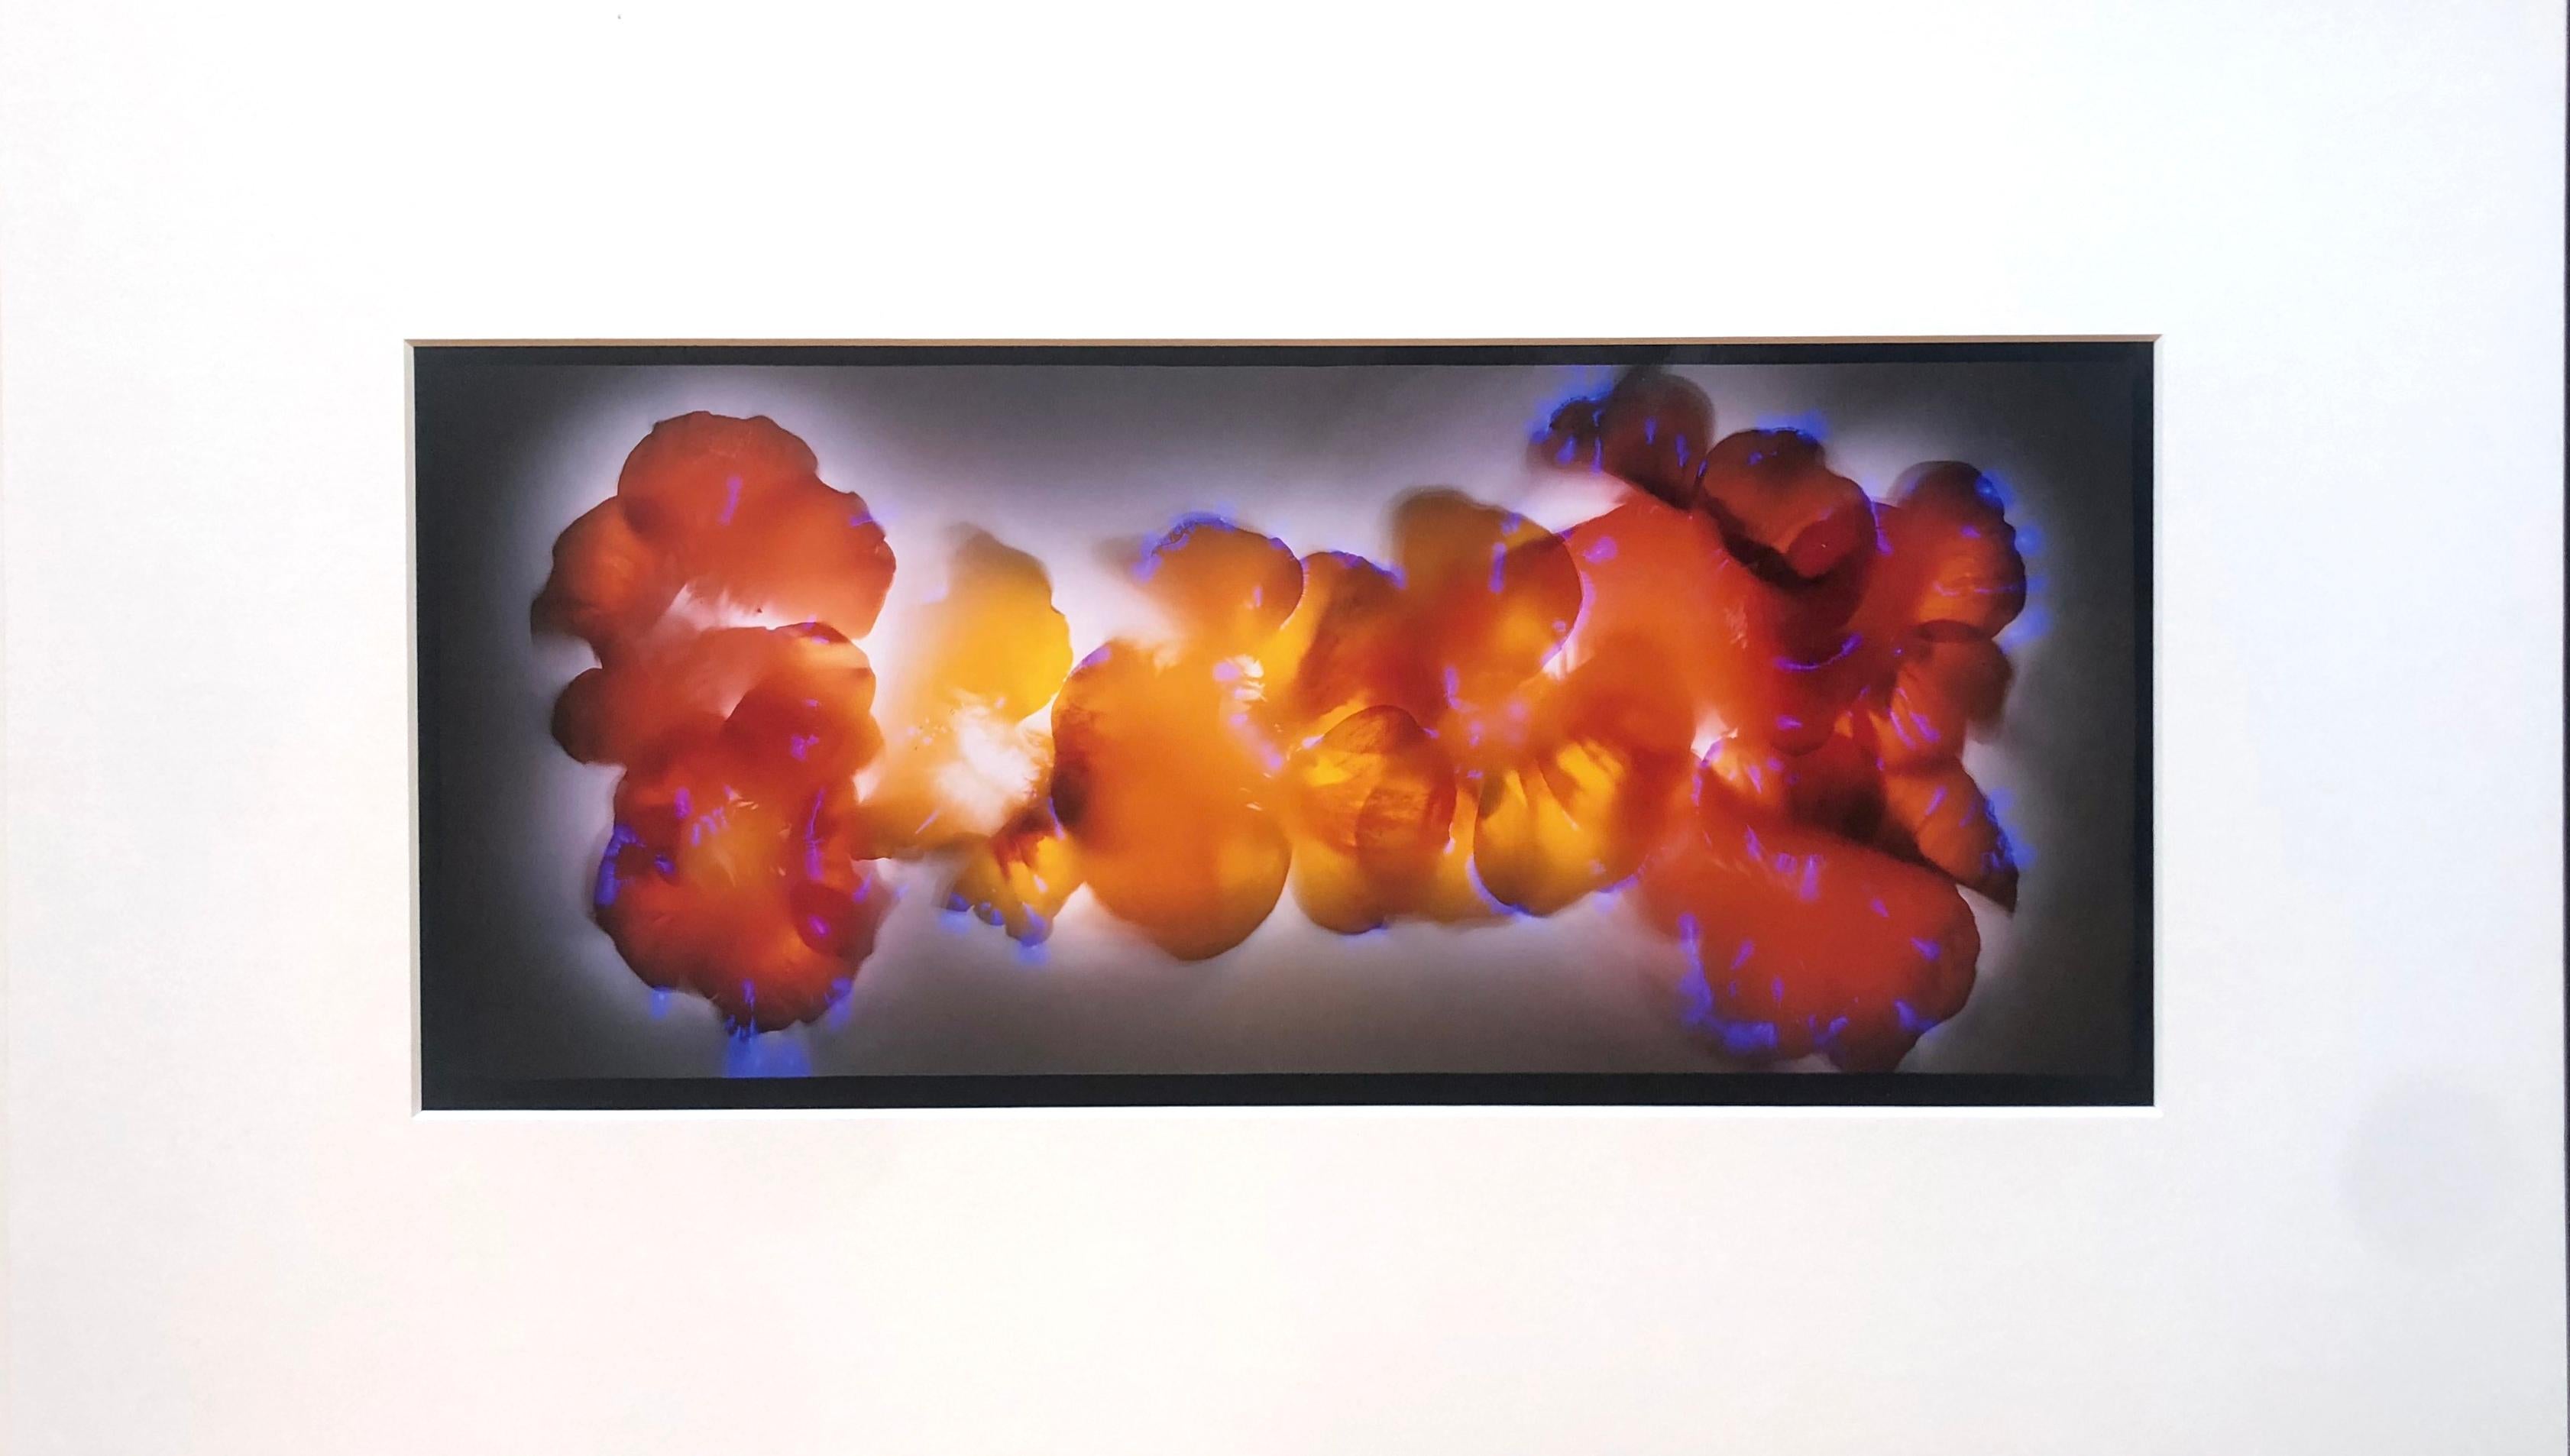 Robert Buelteman Still-Life Photograph - "Nasturtium Blossoms" by Robert Bueltemam, Cameraless photographic print, 2004